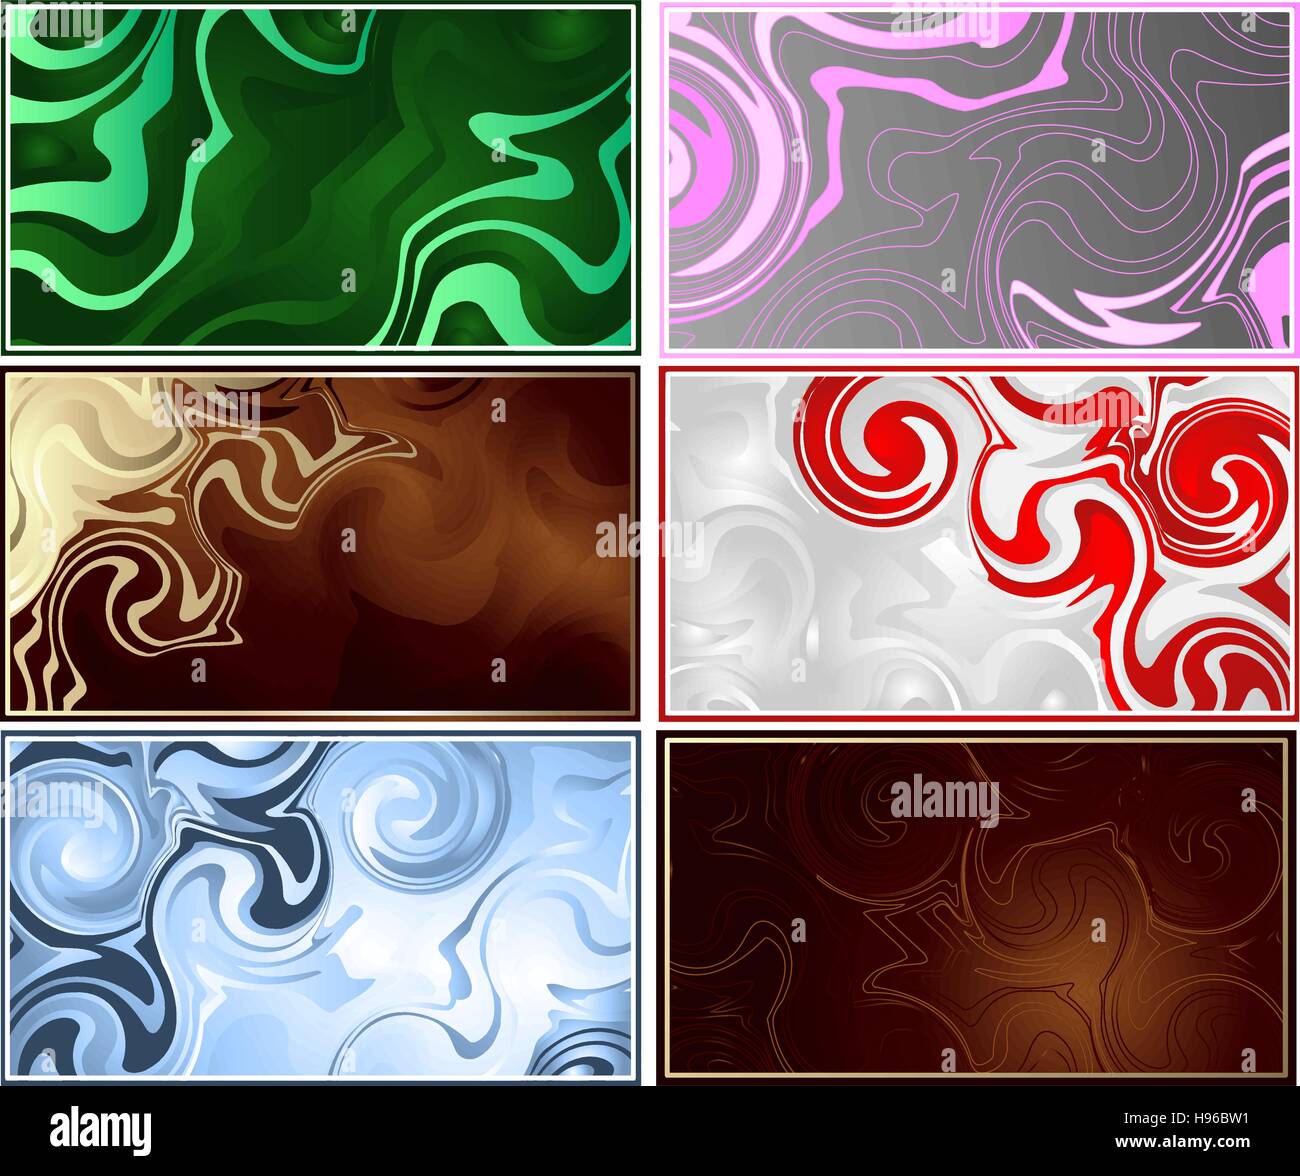 sechs Visitenkarten texturiert abstrakten Hintergrund, braun, blau, grün, rosa und grau. Stock Vektor